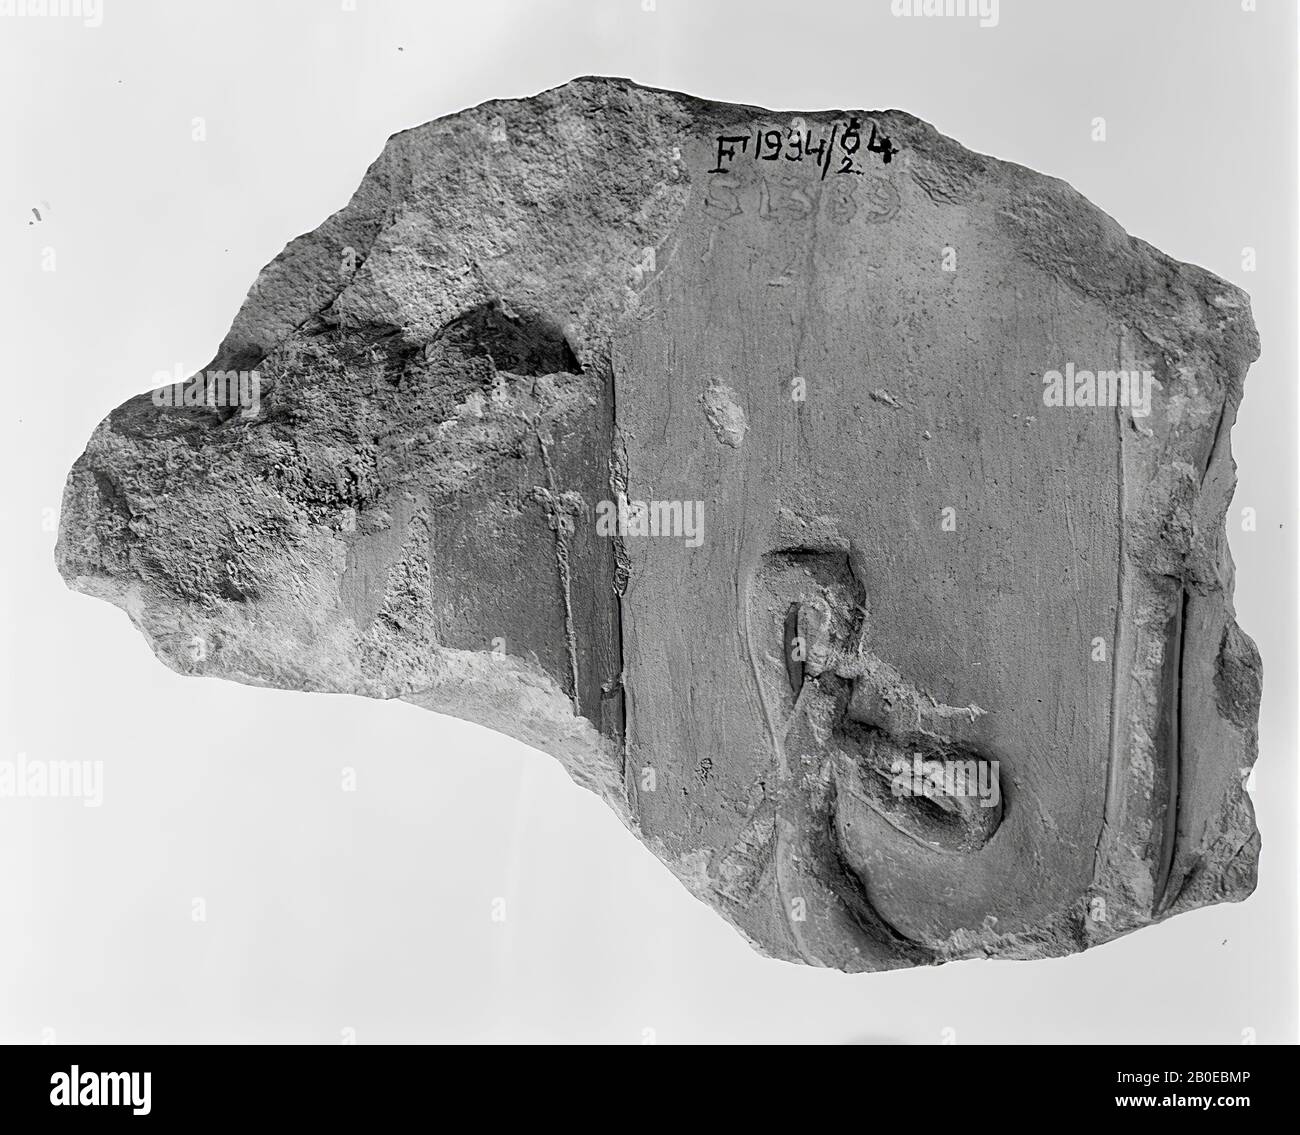 Inscription, relief, calcaire, 12 x 12 x 6 cm, Royaume du milieu, 12ème dynastie, Egypte Banque D'Images